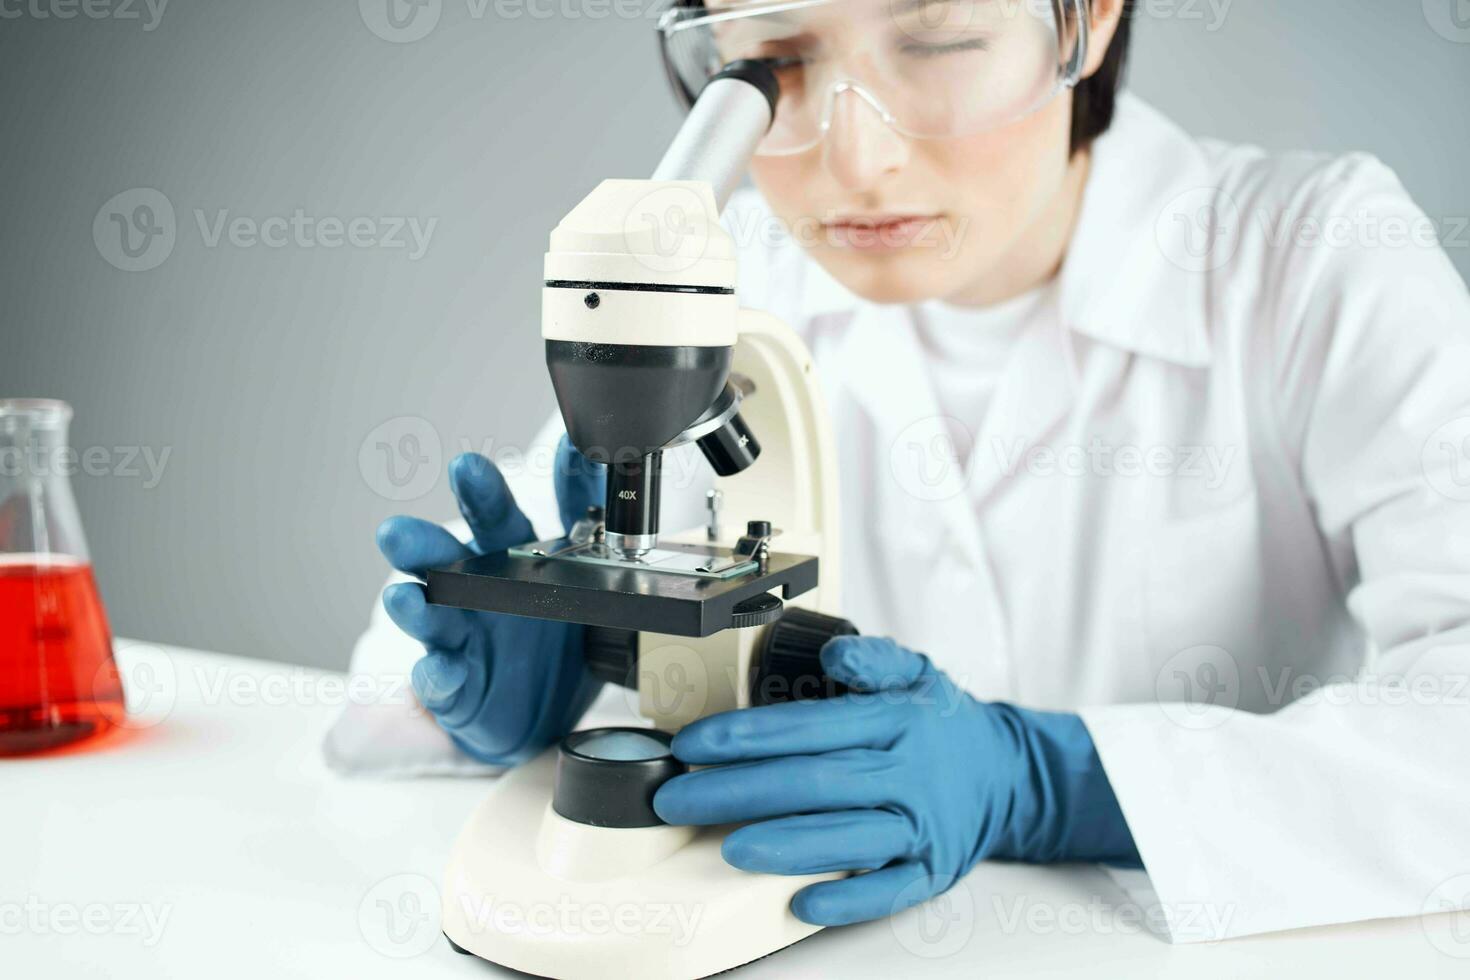 laboratorium assistent ser genom en mikroskop vetenskap forskning teknologi experimentera foto